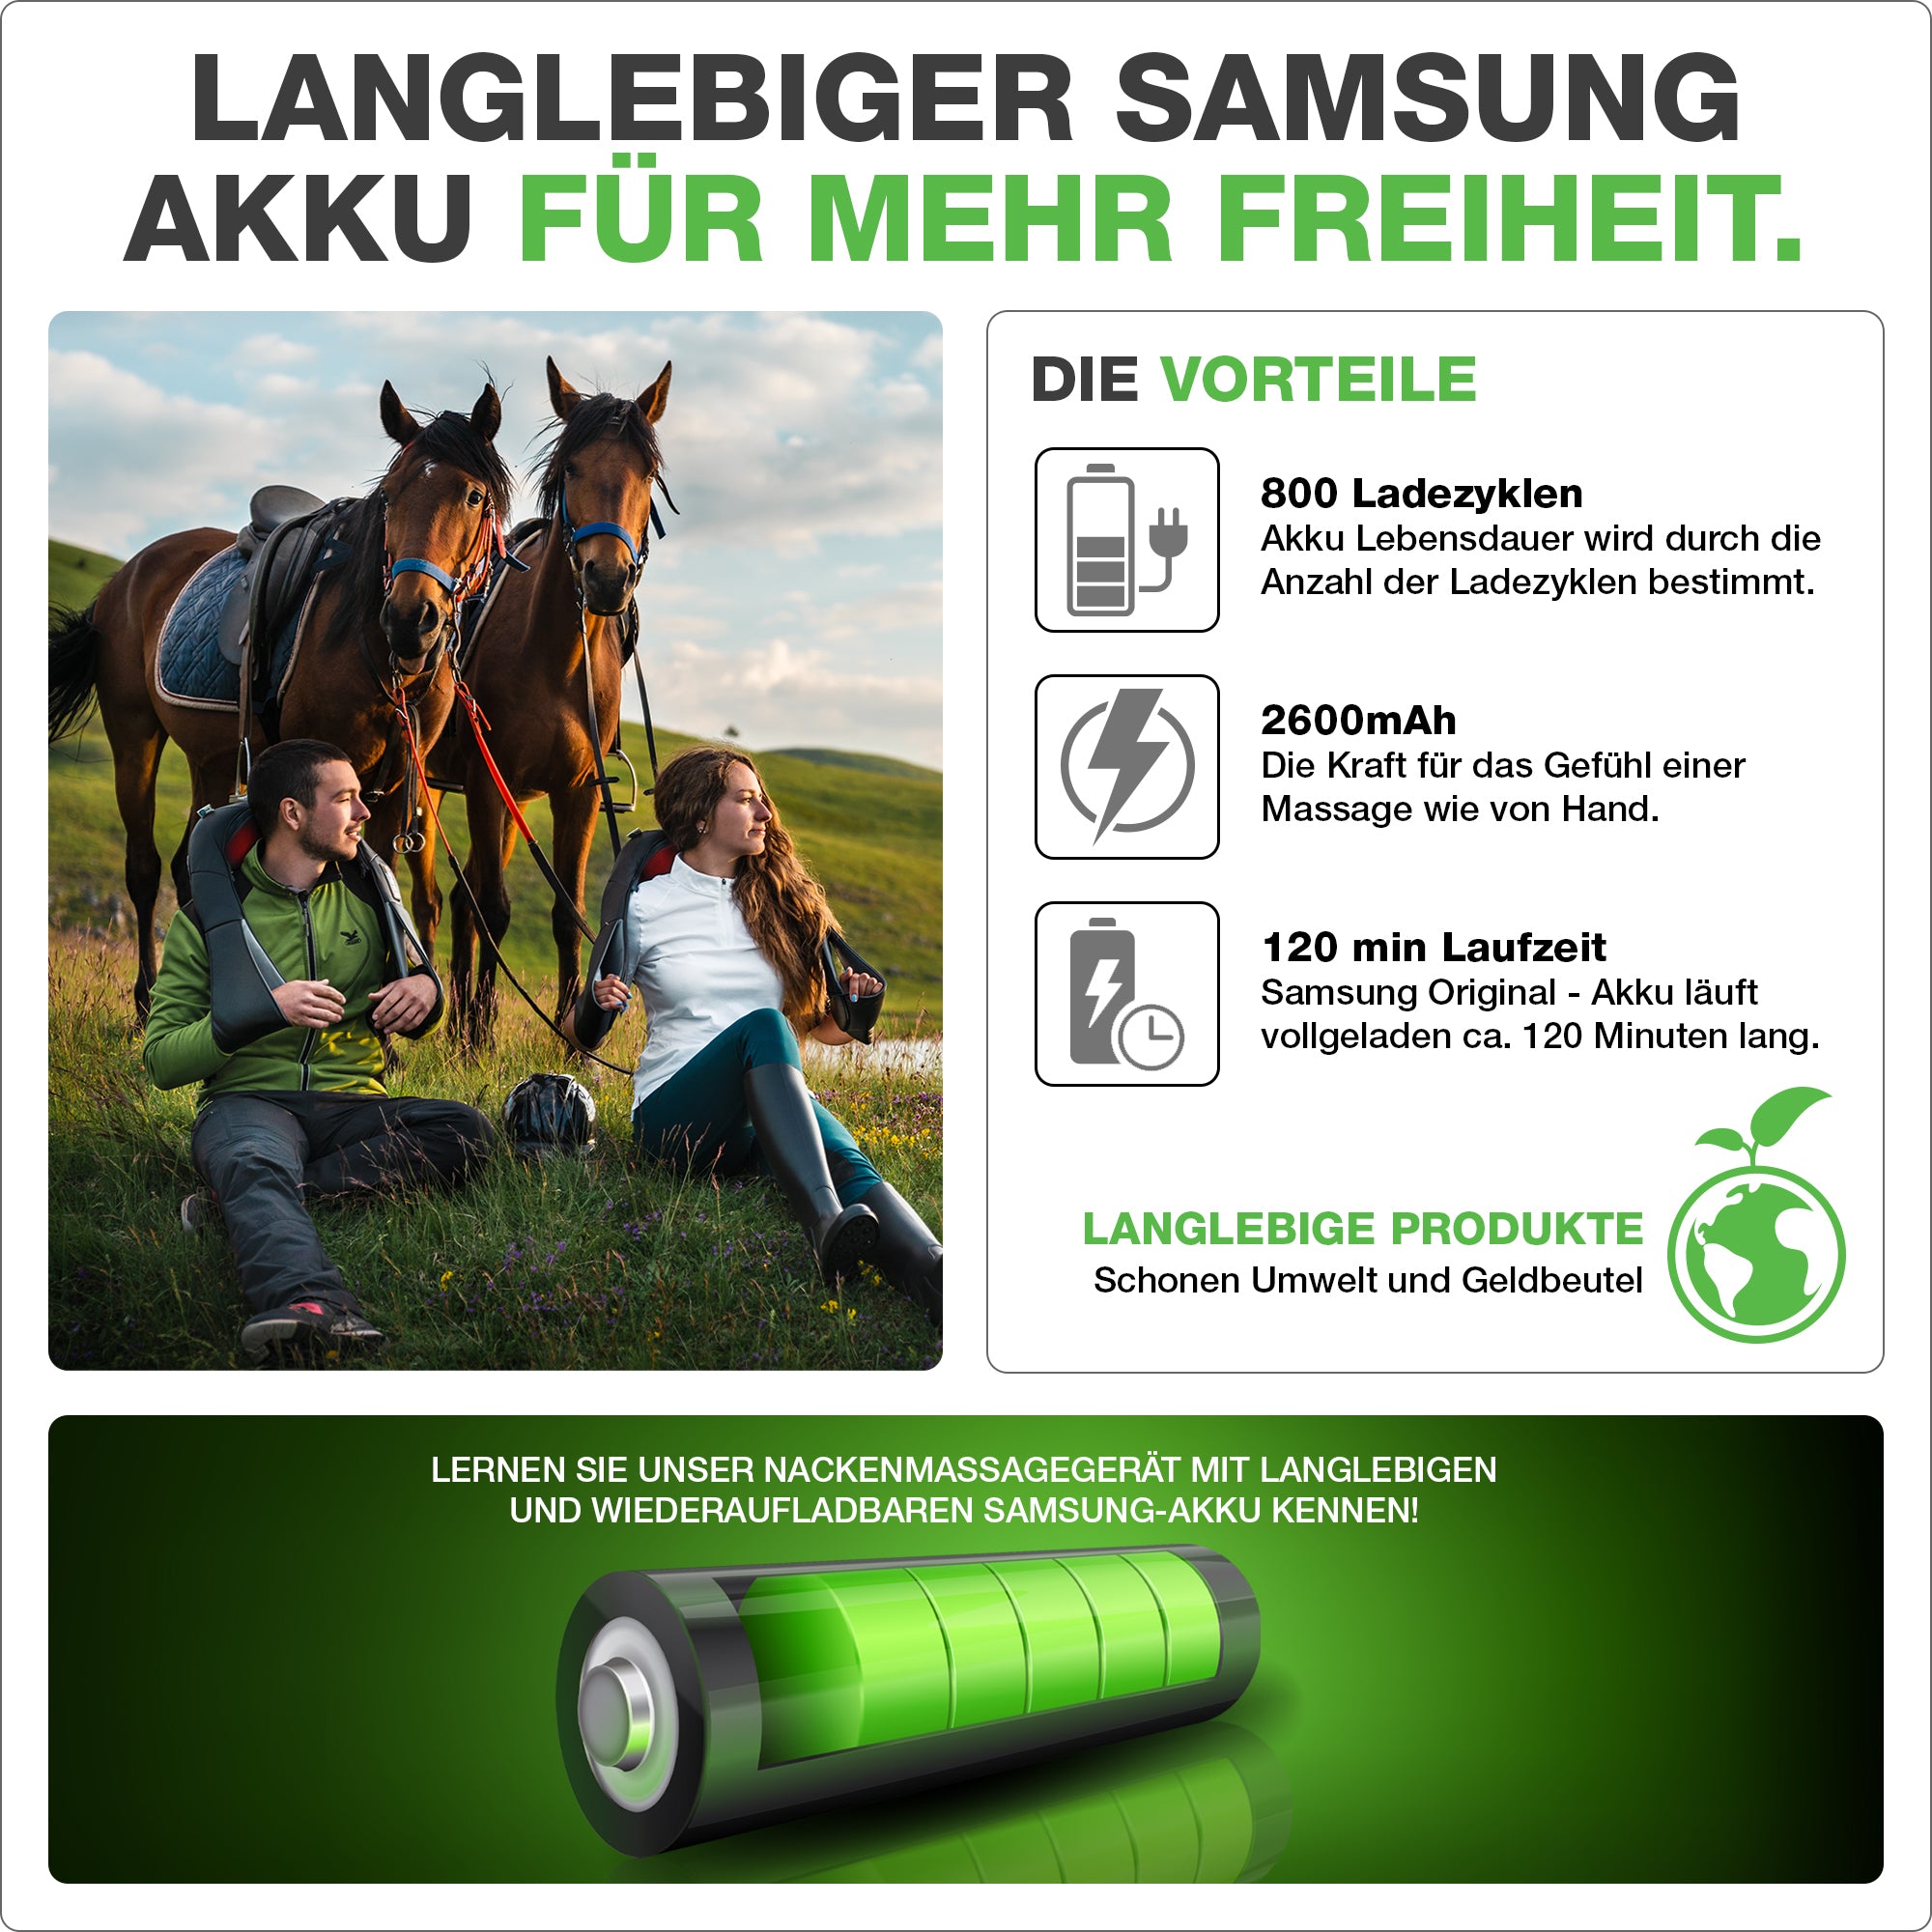 Batterie rechargeable Samsung de longue vie pour plus de liberté.